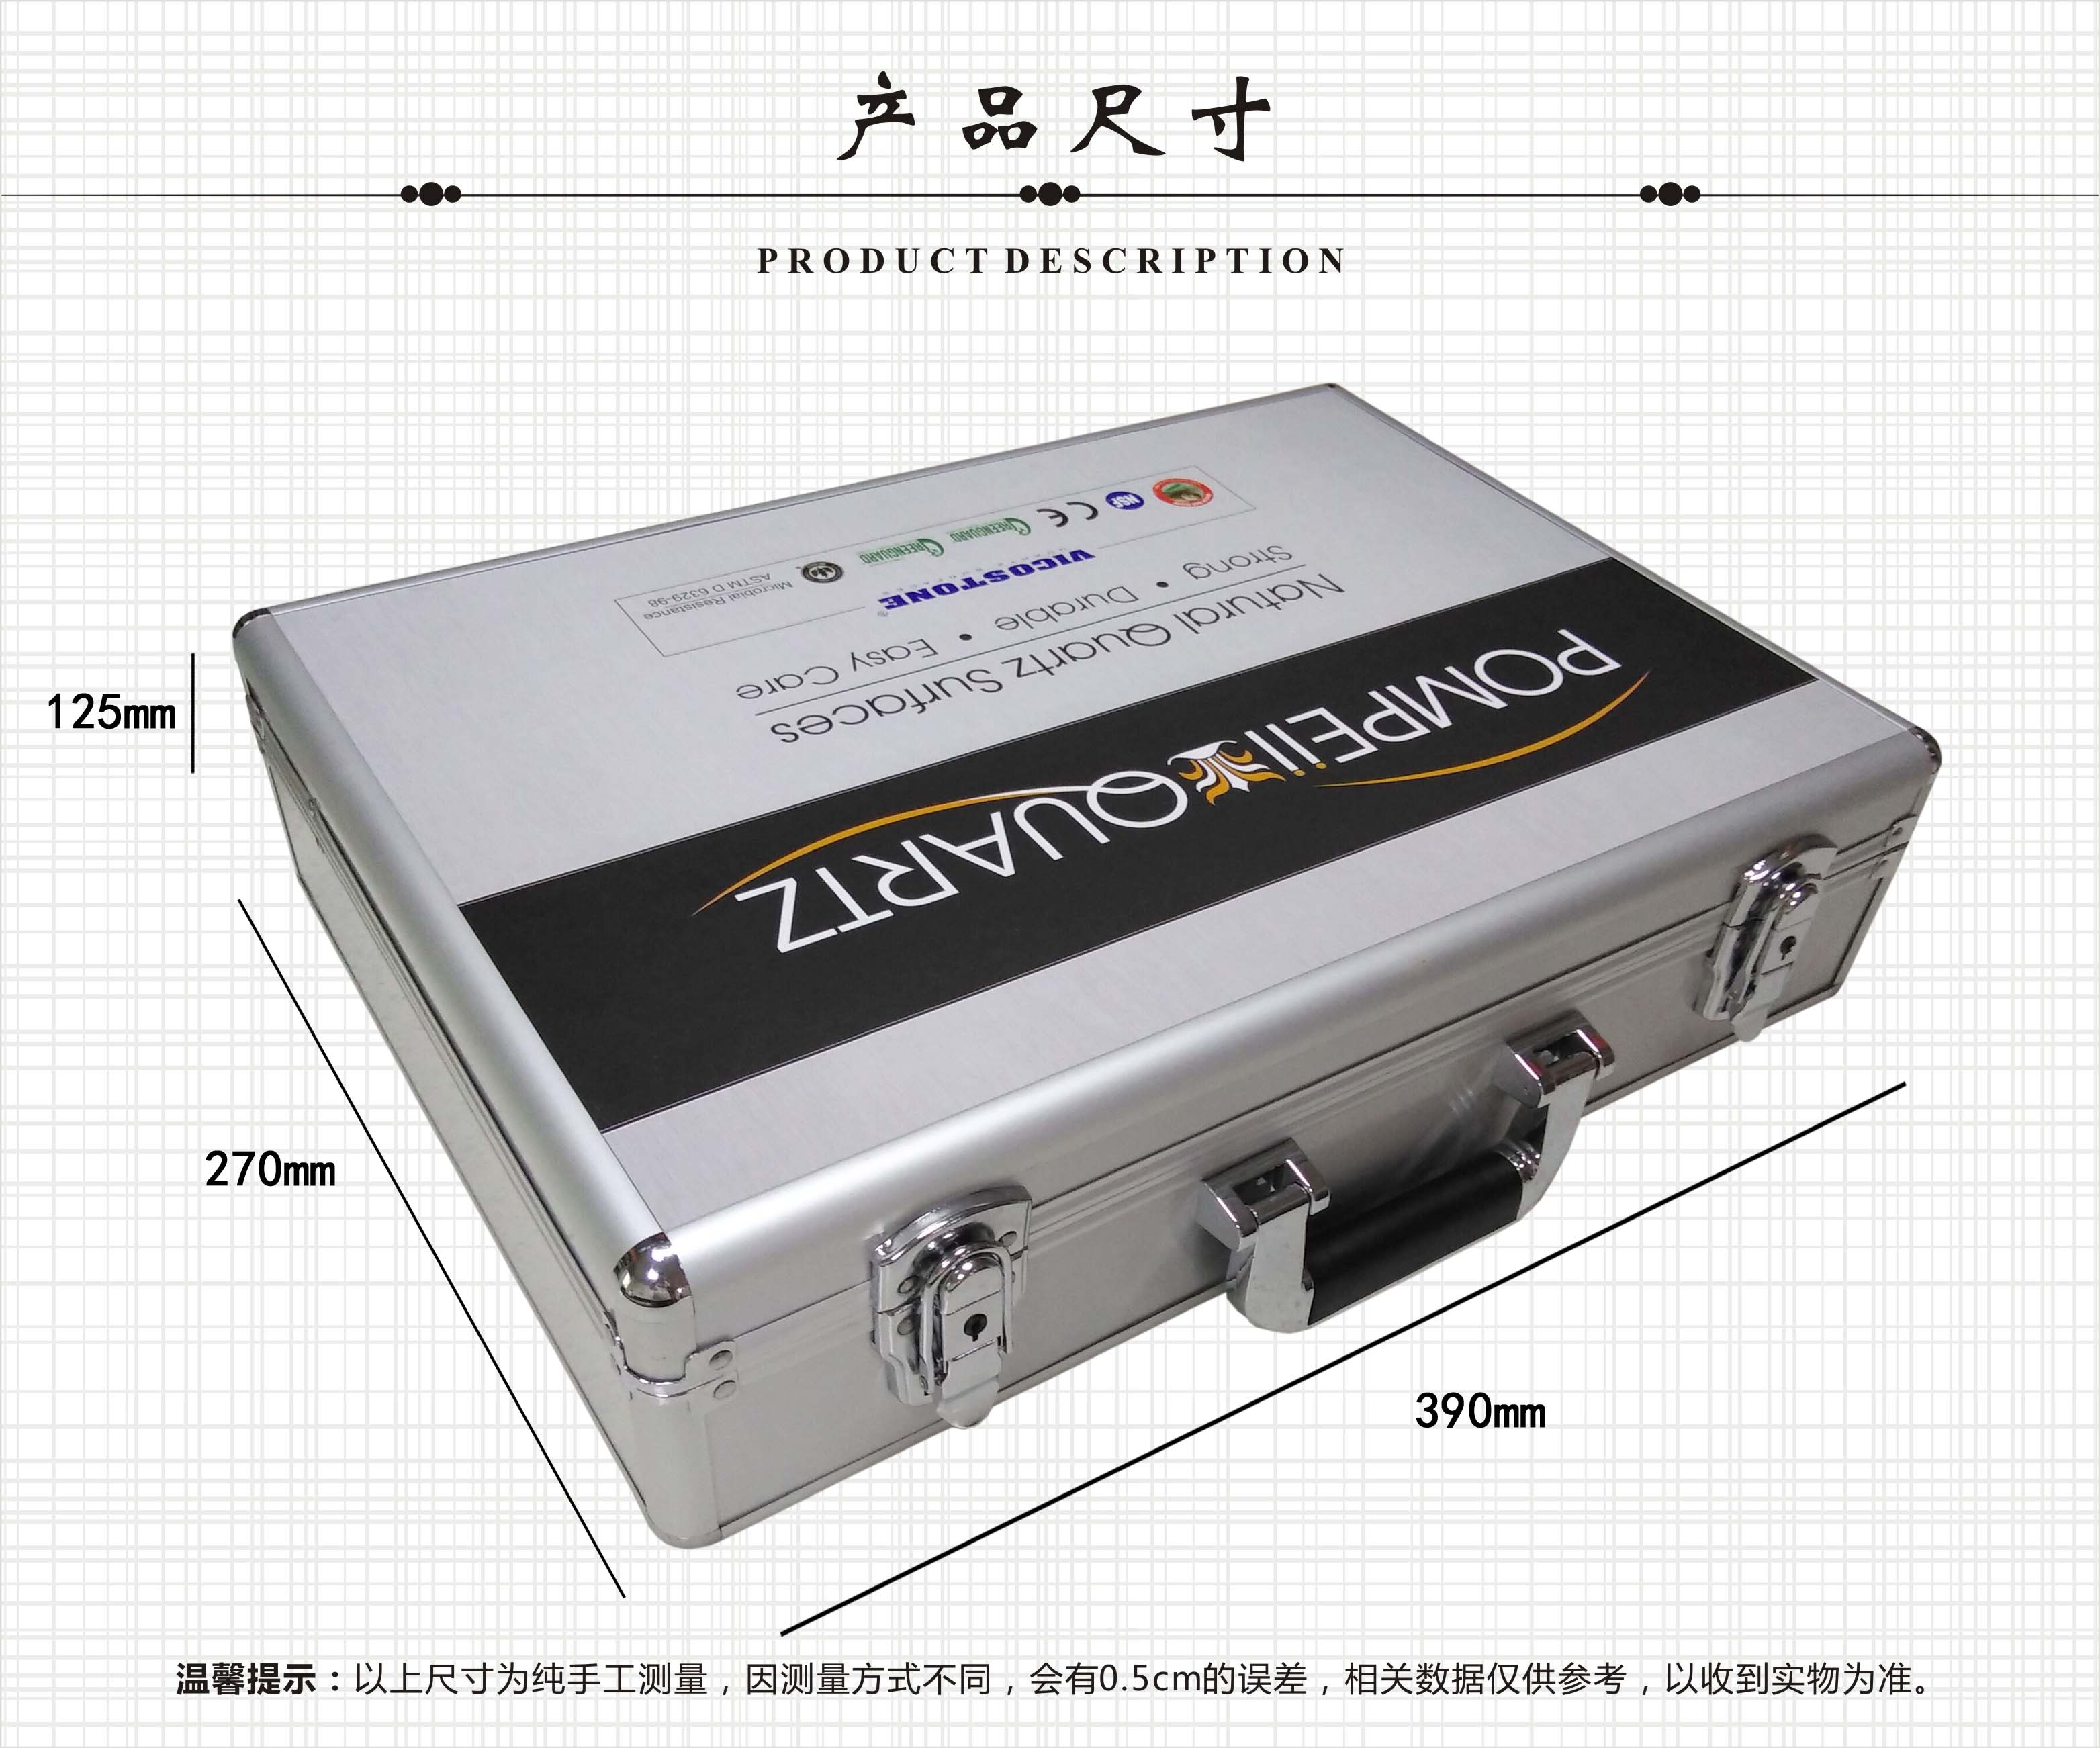 人造石手提箱 样品密码箱 PX010 石英石铝合金展示箱 物美价廉 PS-EVA